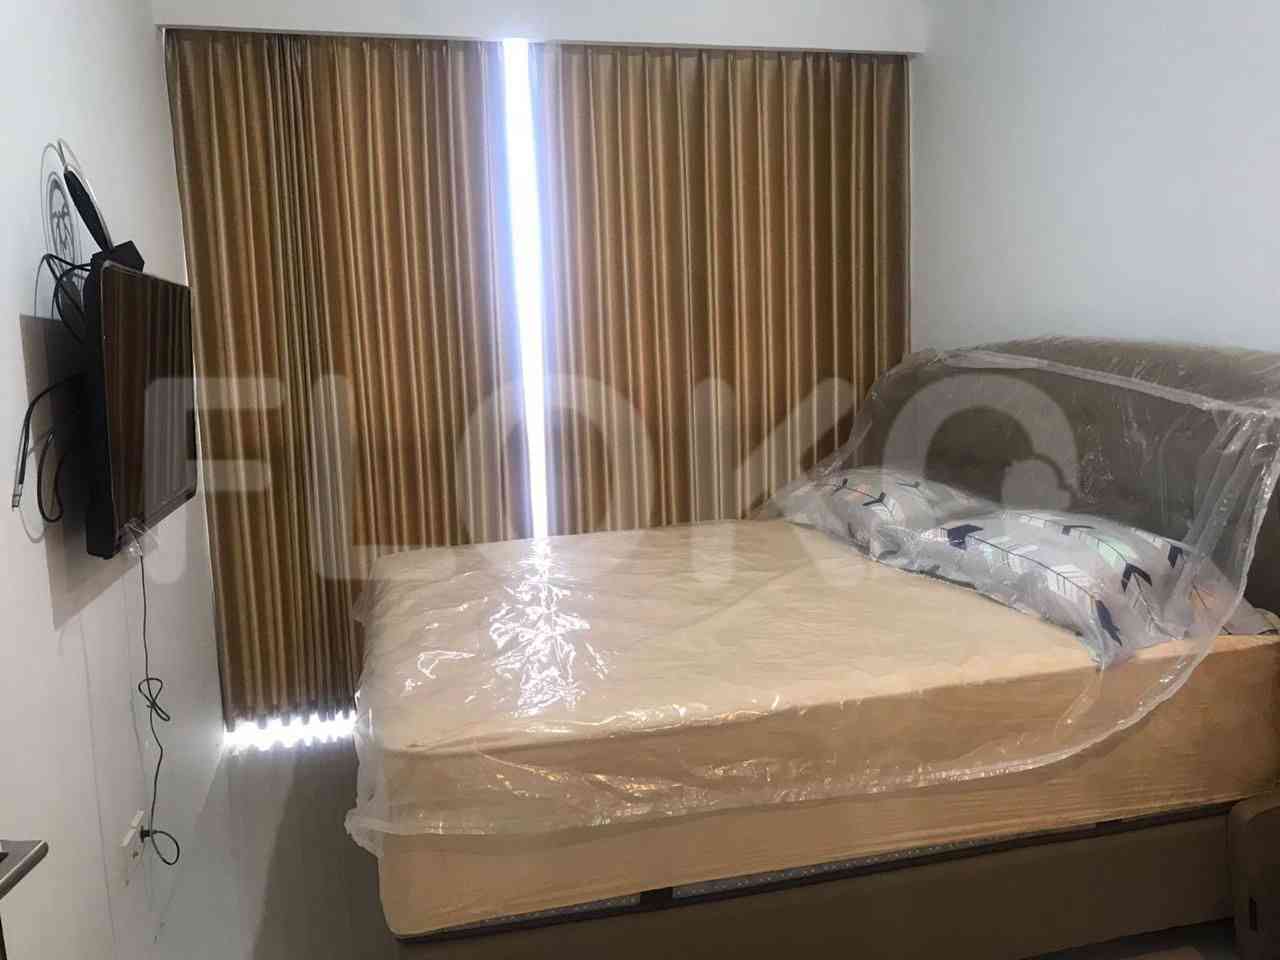 2 Bedroom on 15th Floor for Rent in Lexington Residence - fbi3c7 1